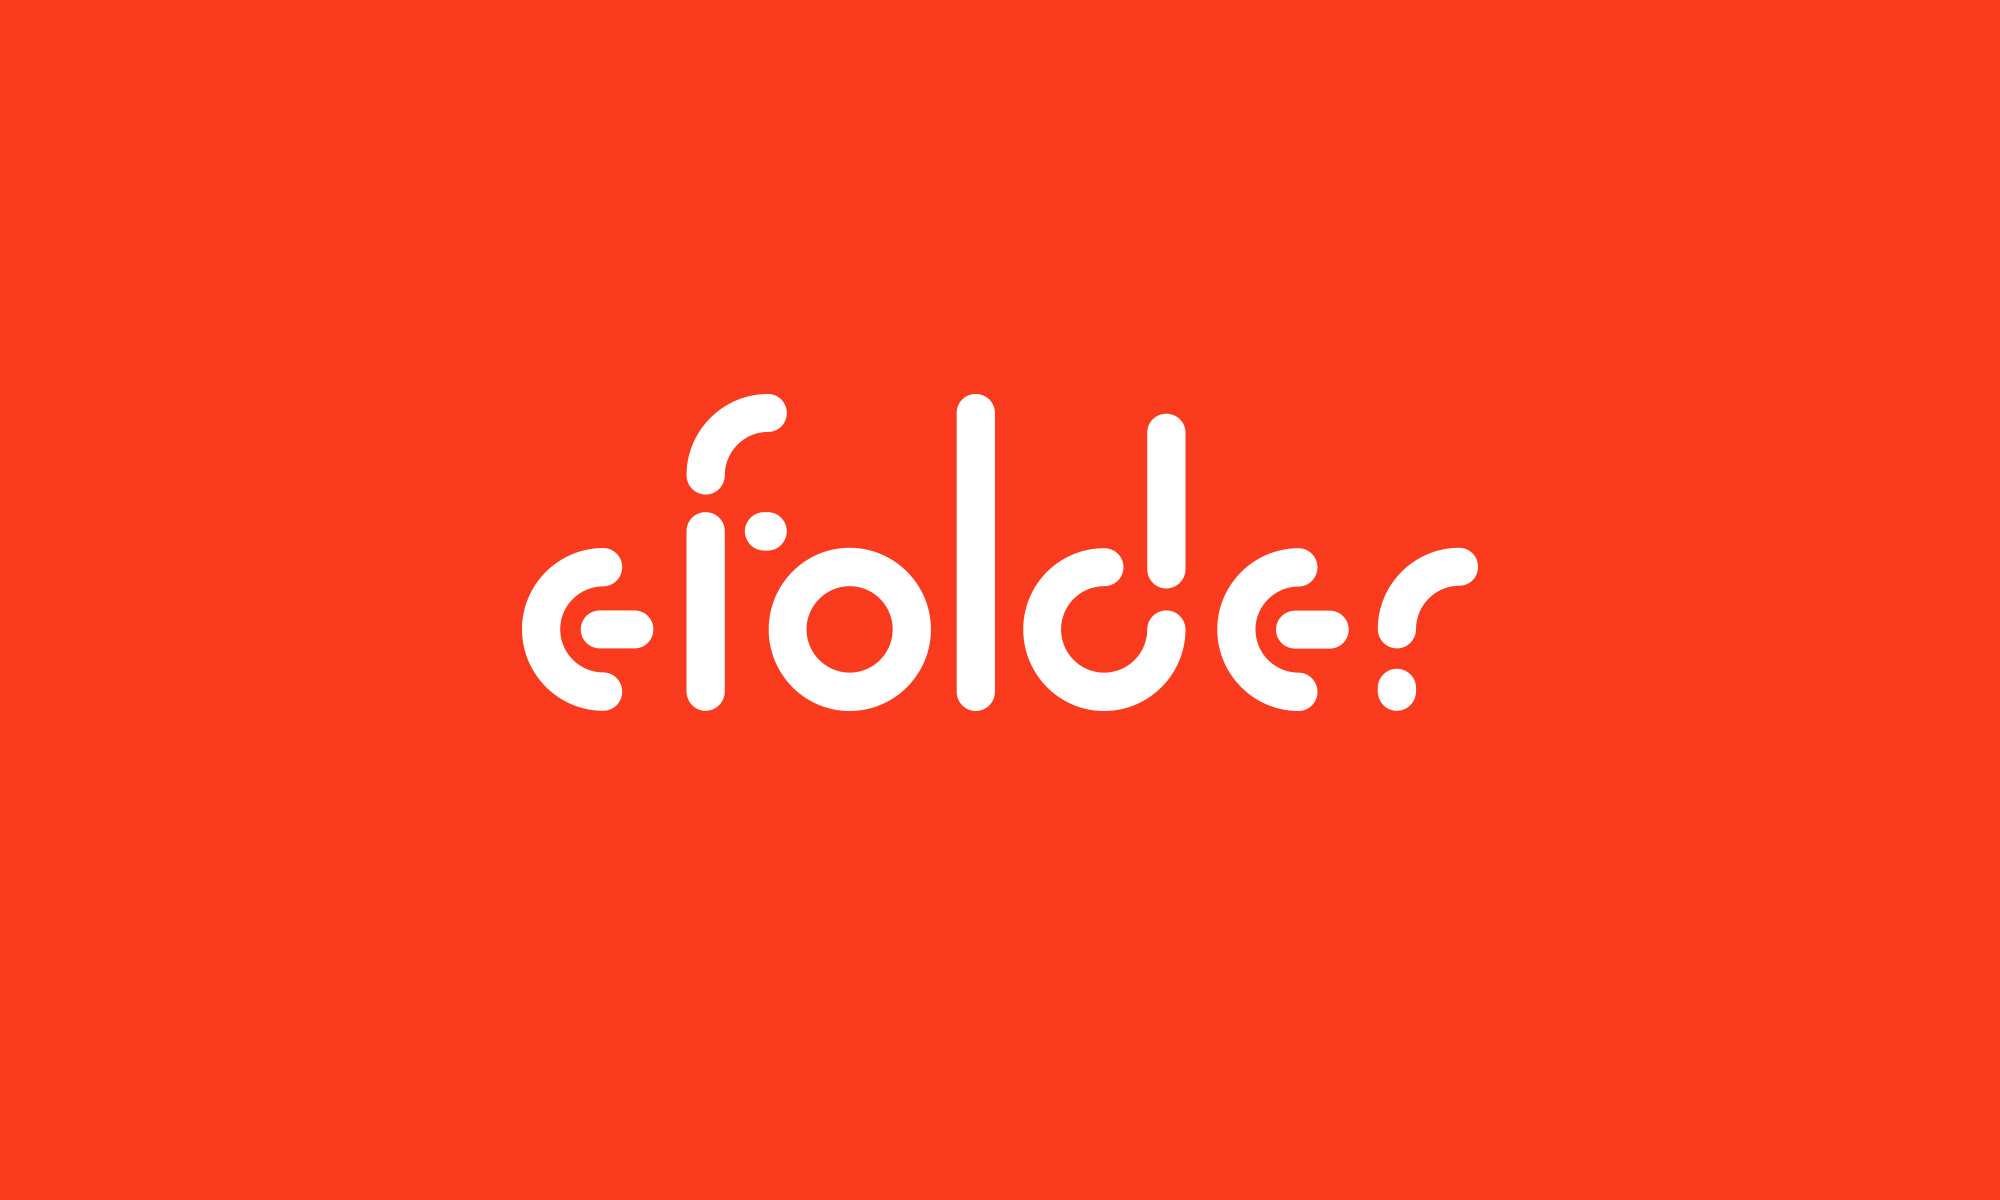 eFolder logo